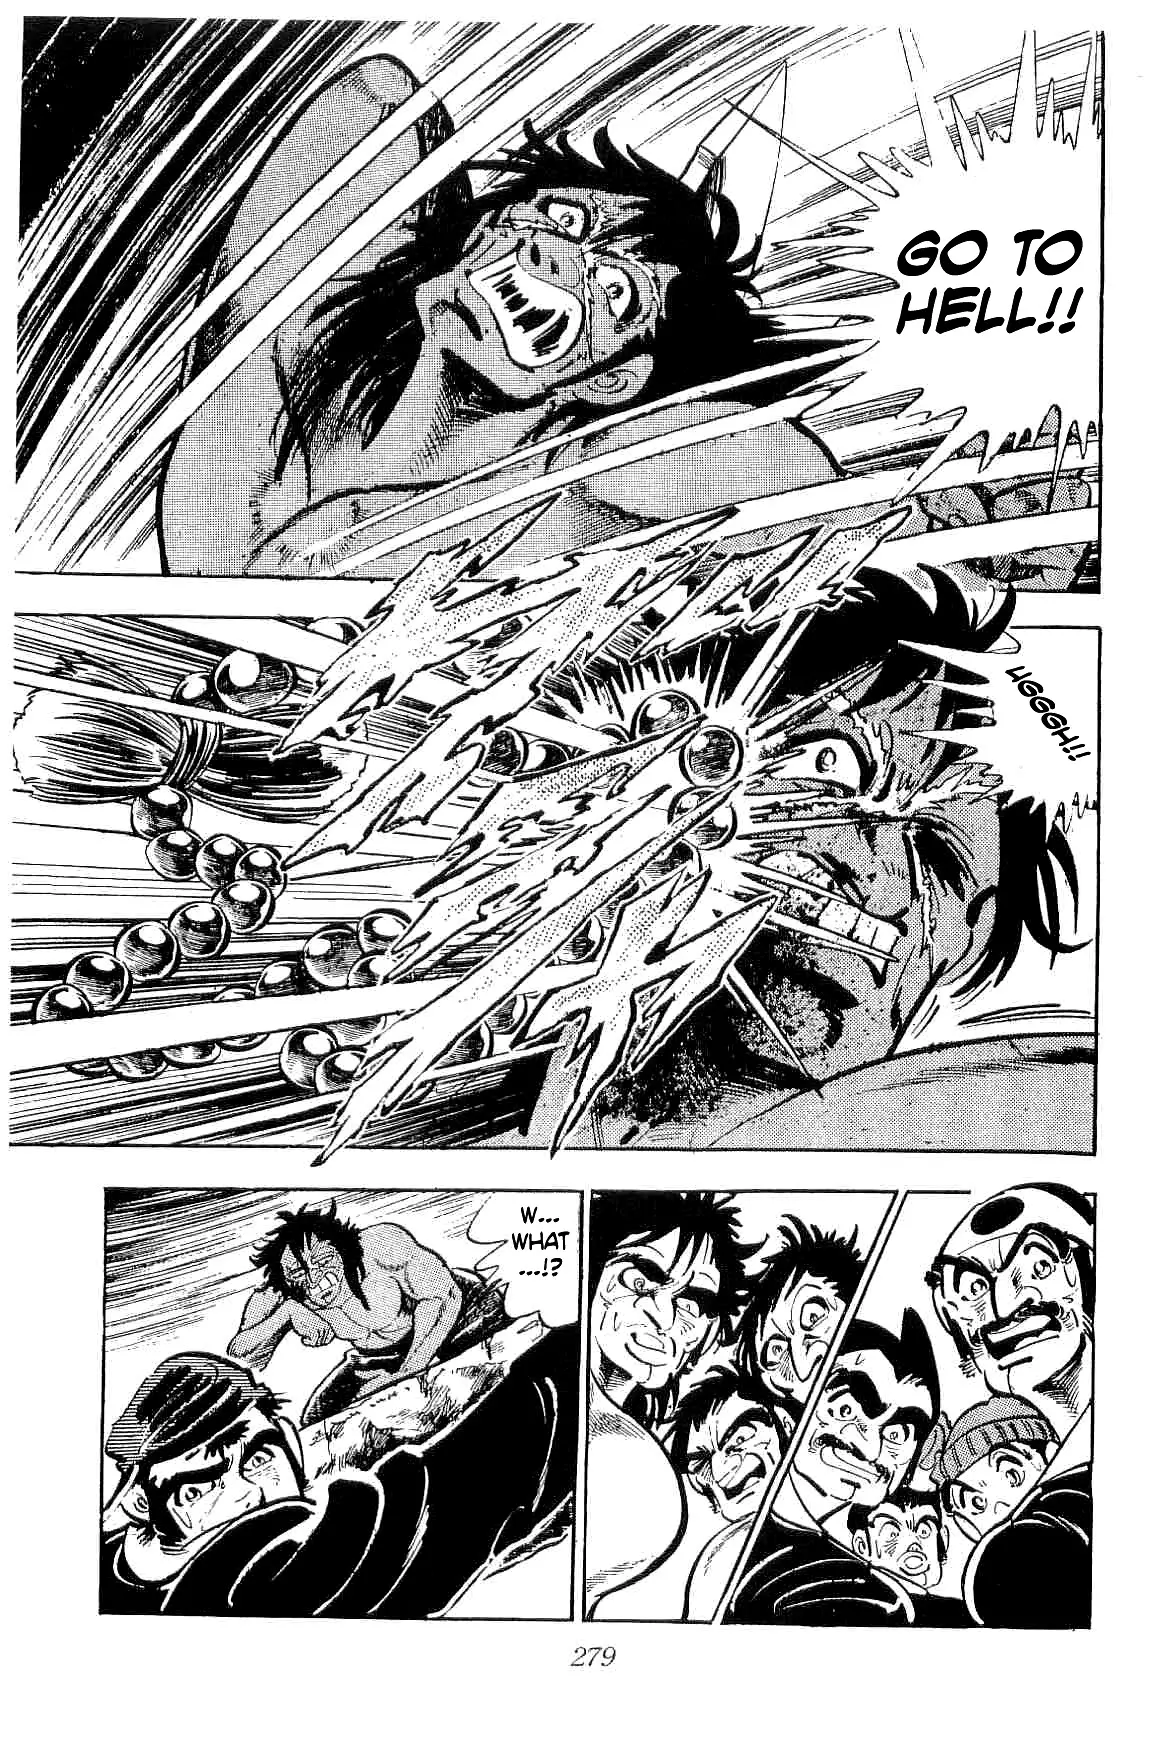 Rage!! The Gokutora Family - 37 page 16-76554c83